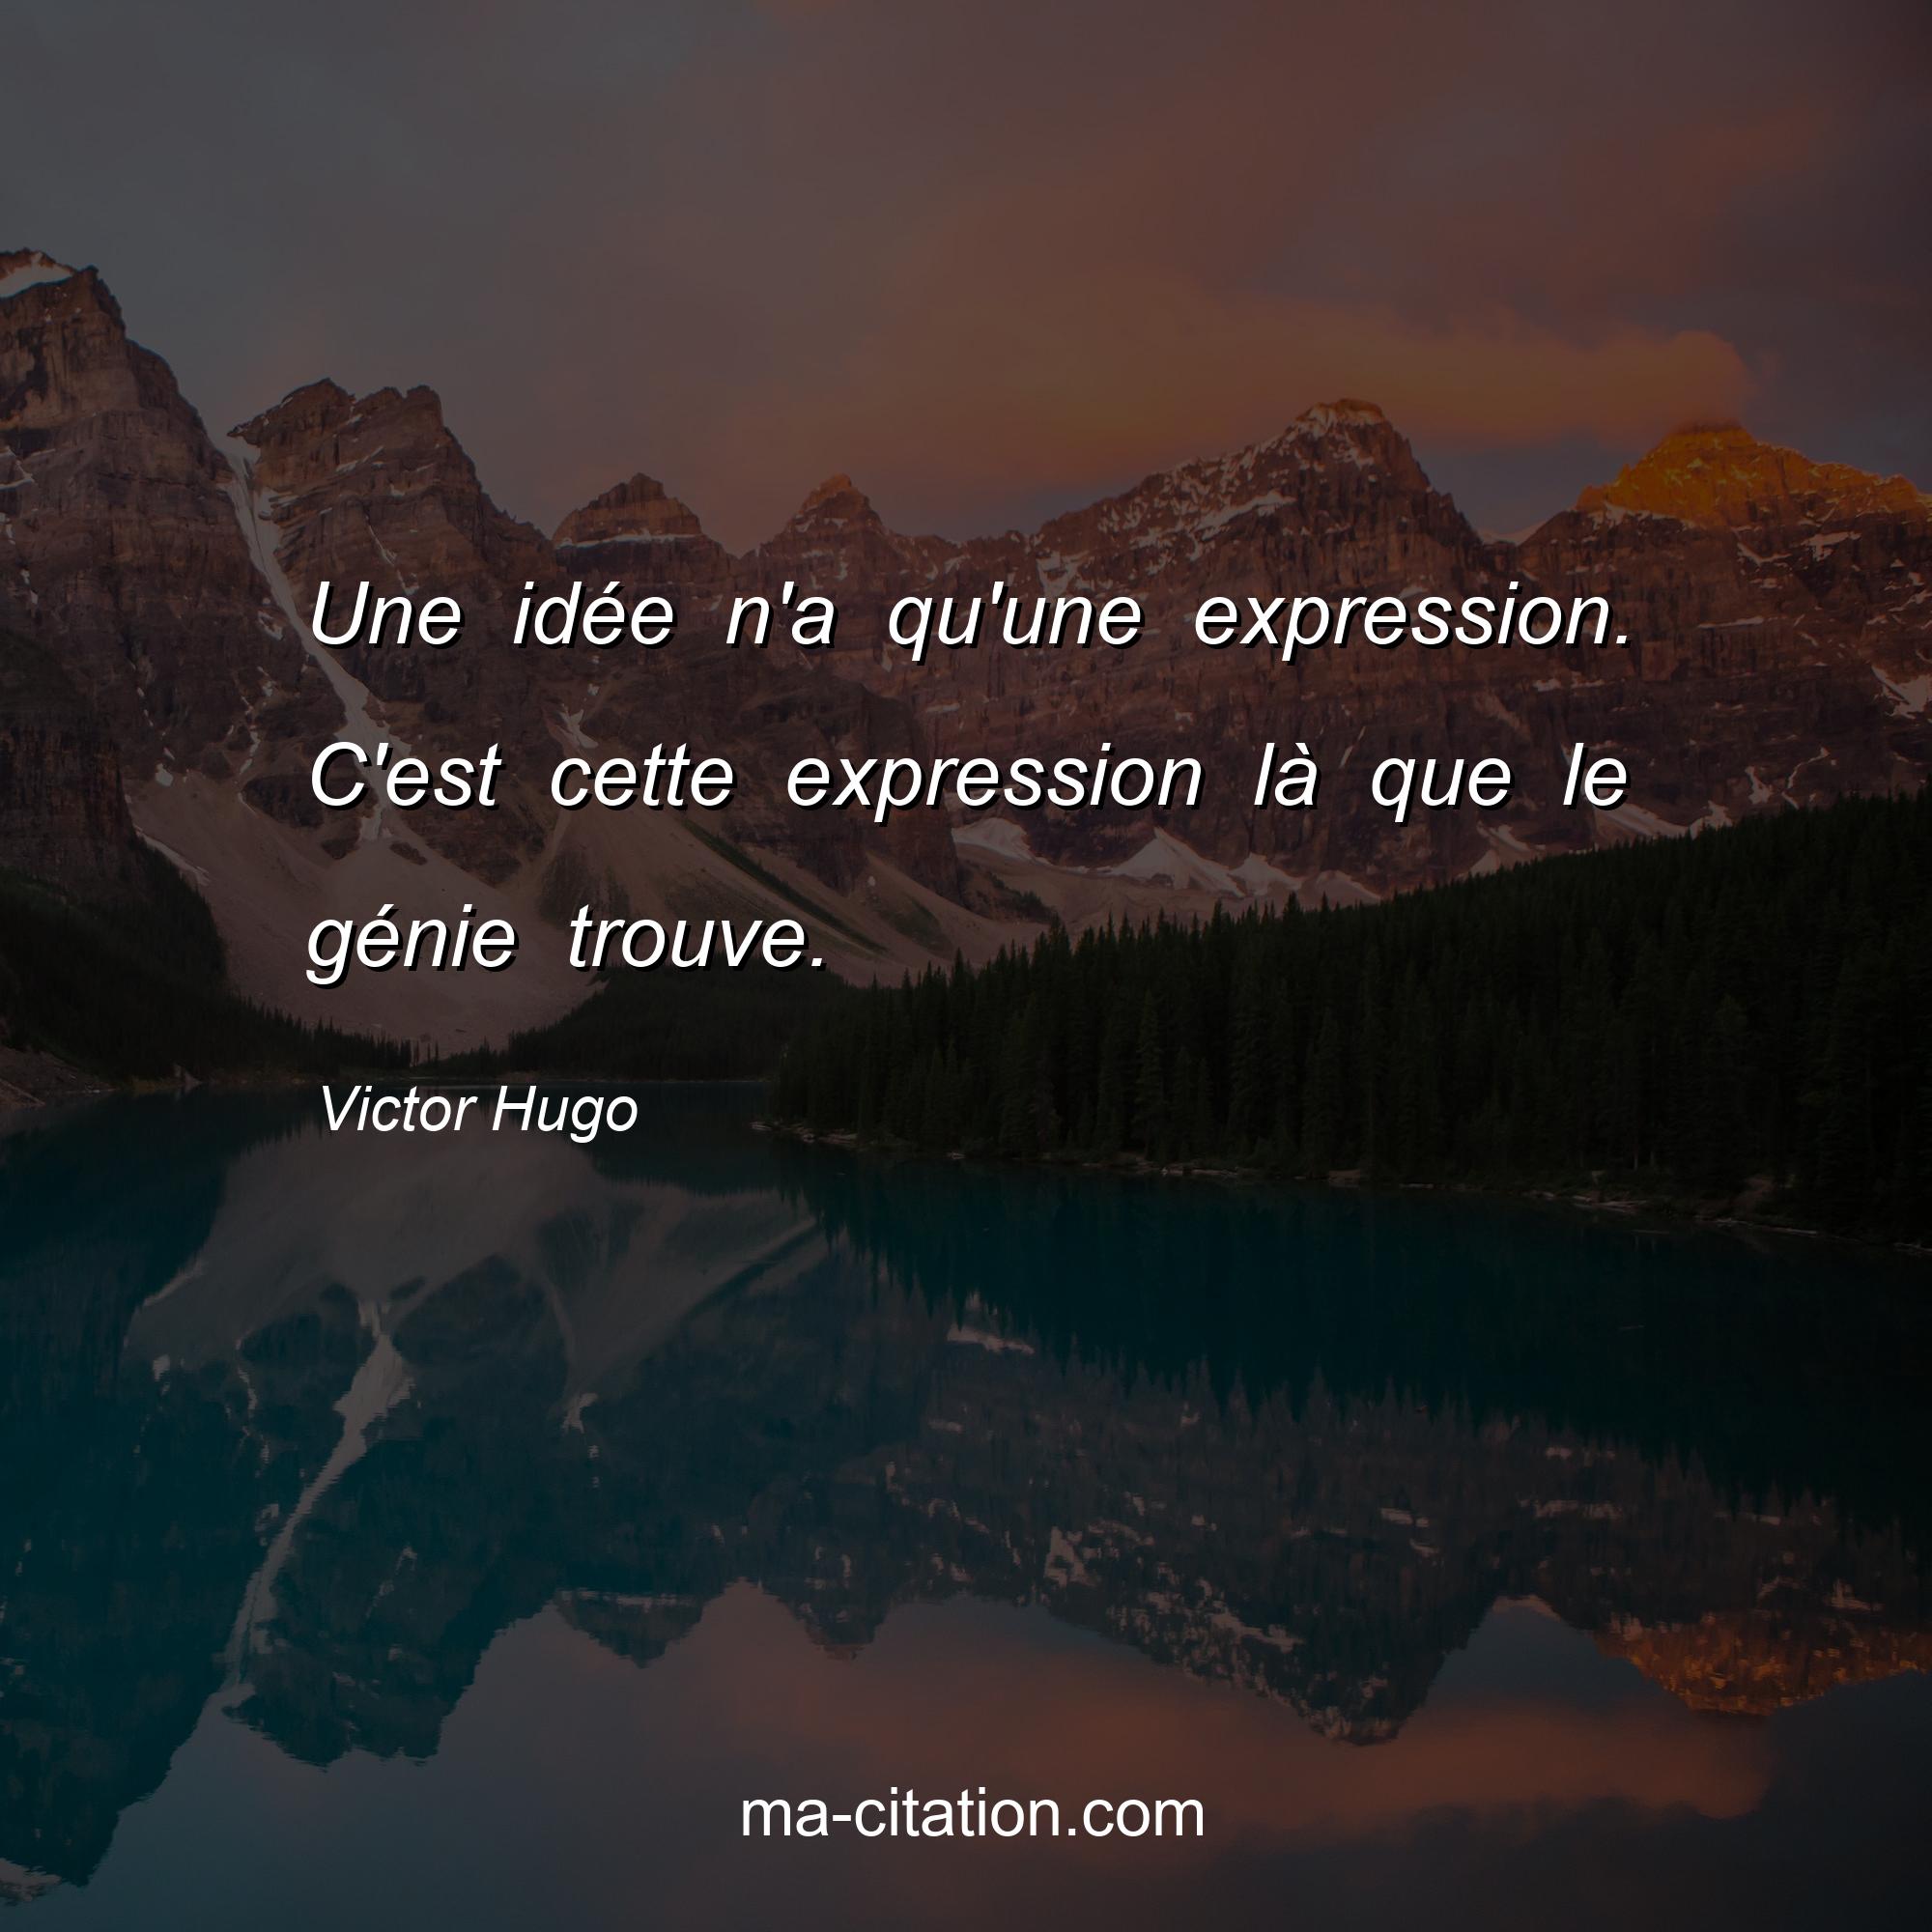 Victor Hugo : Une idée n'a qu'une expression. C'est cette expression là que le génie trouve.